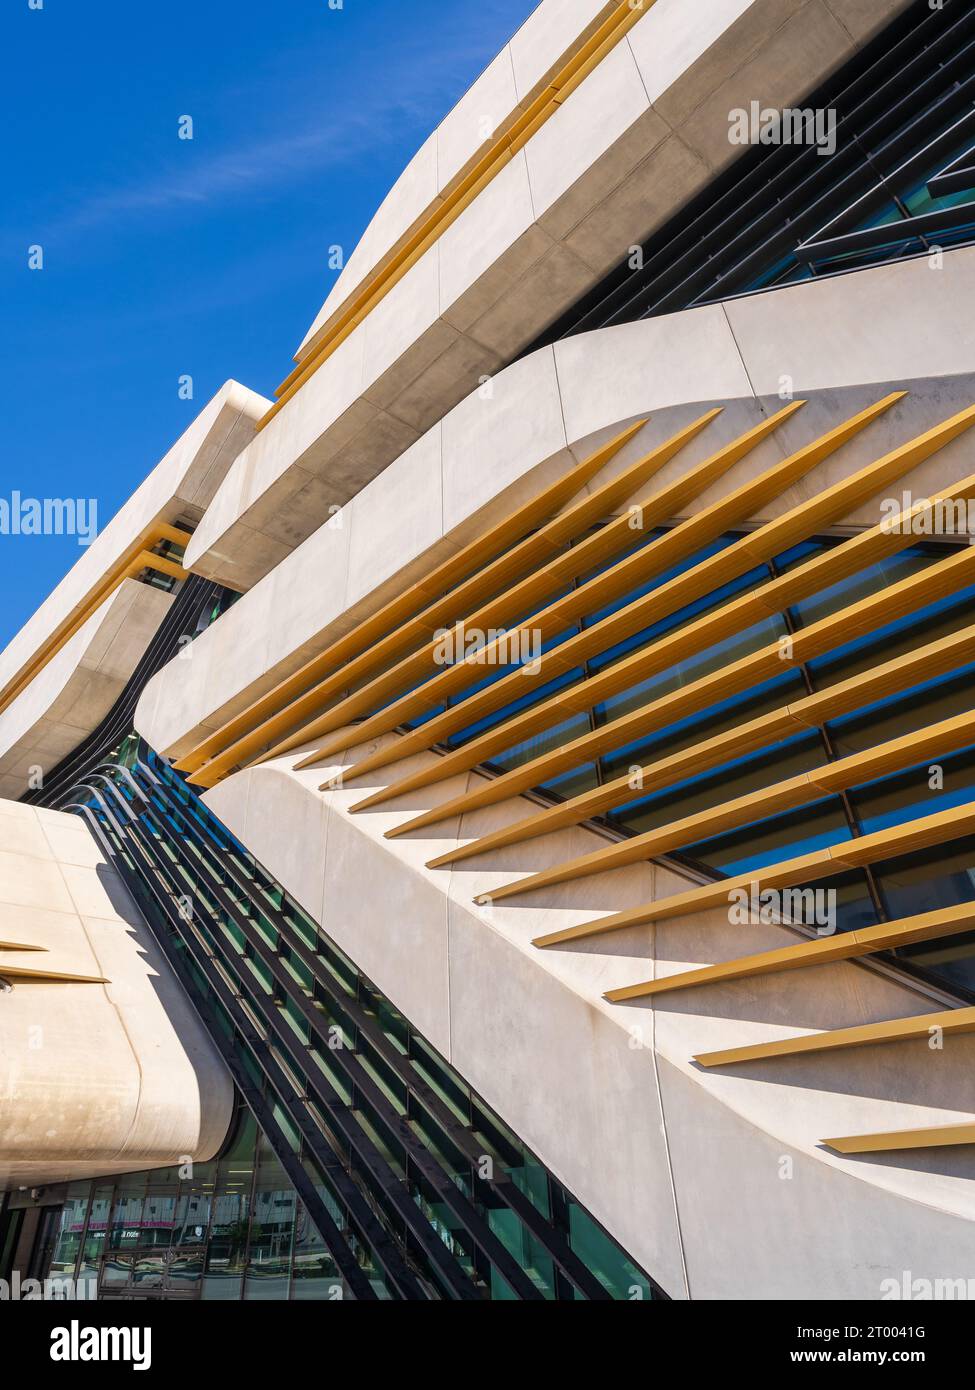 Montpellier, Francia - 09 28 2023 : Vista dettagliata della facciata dell'edificio della biblioteca e degli archivi Pierresvives - architettura contemporanea di Zaha Hadid Foto Stock